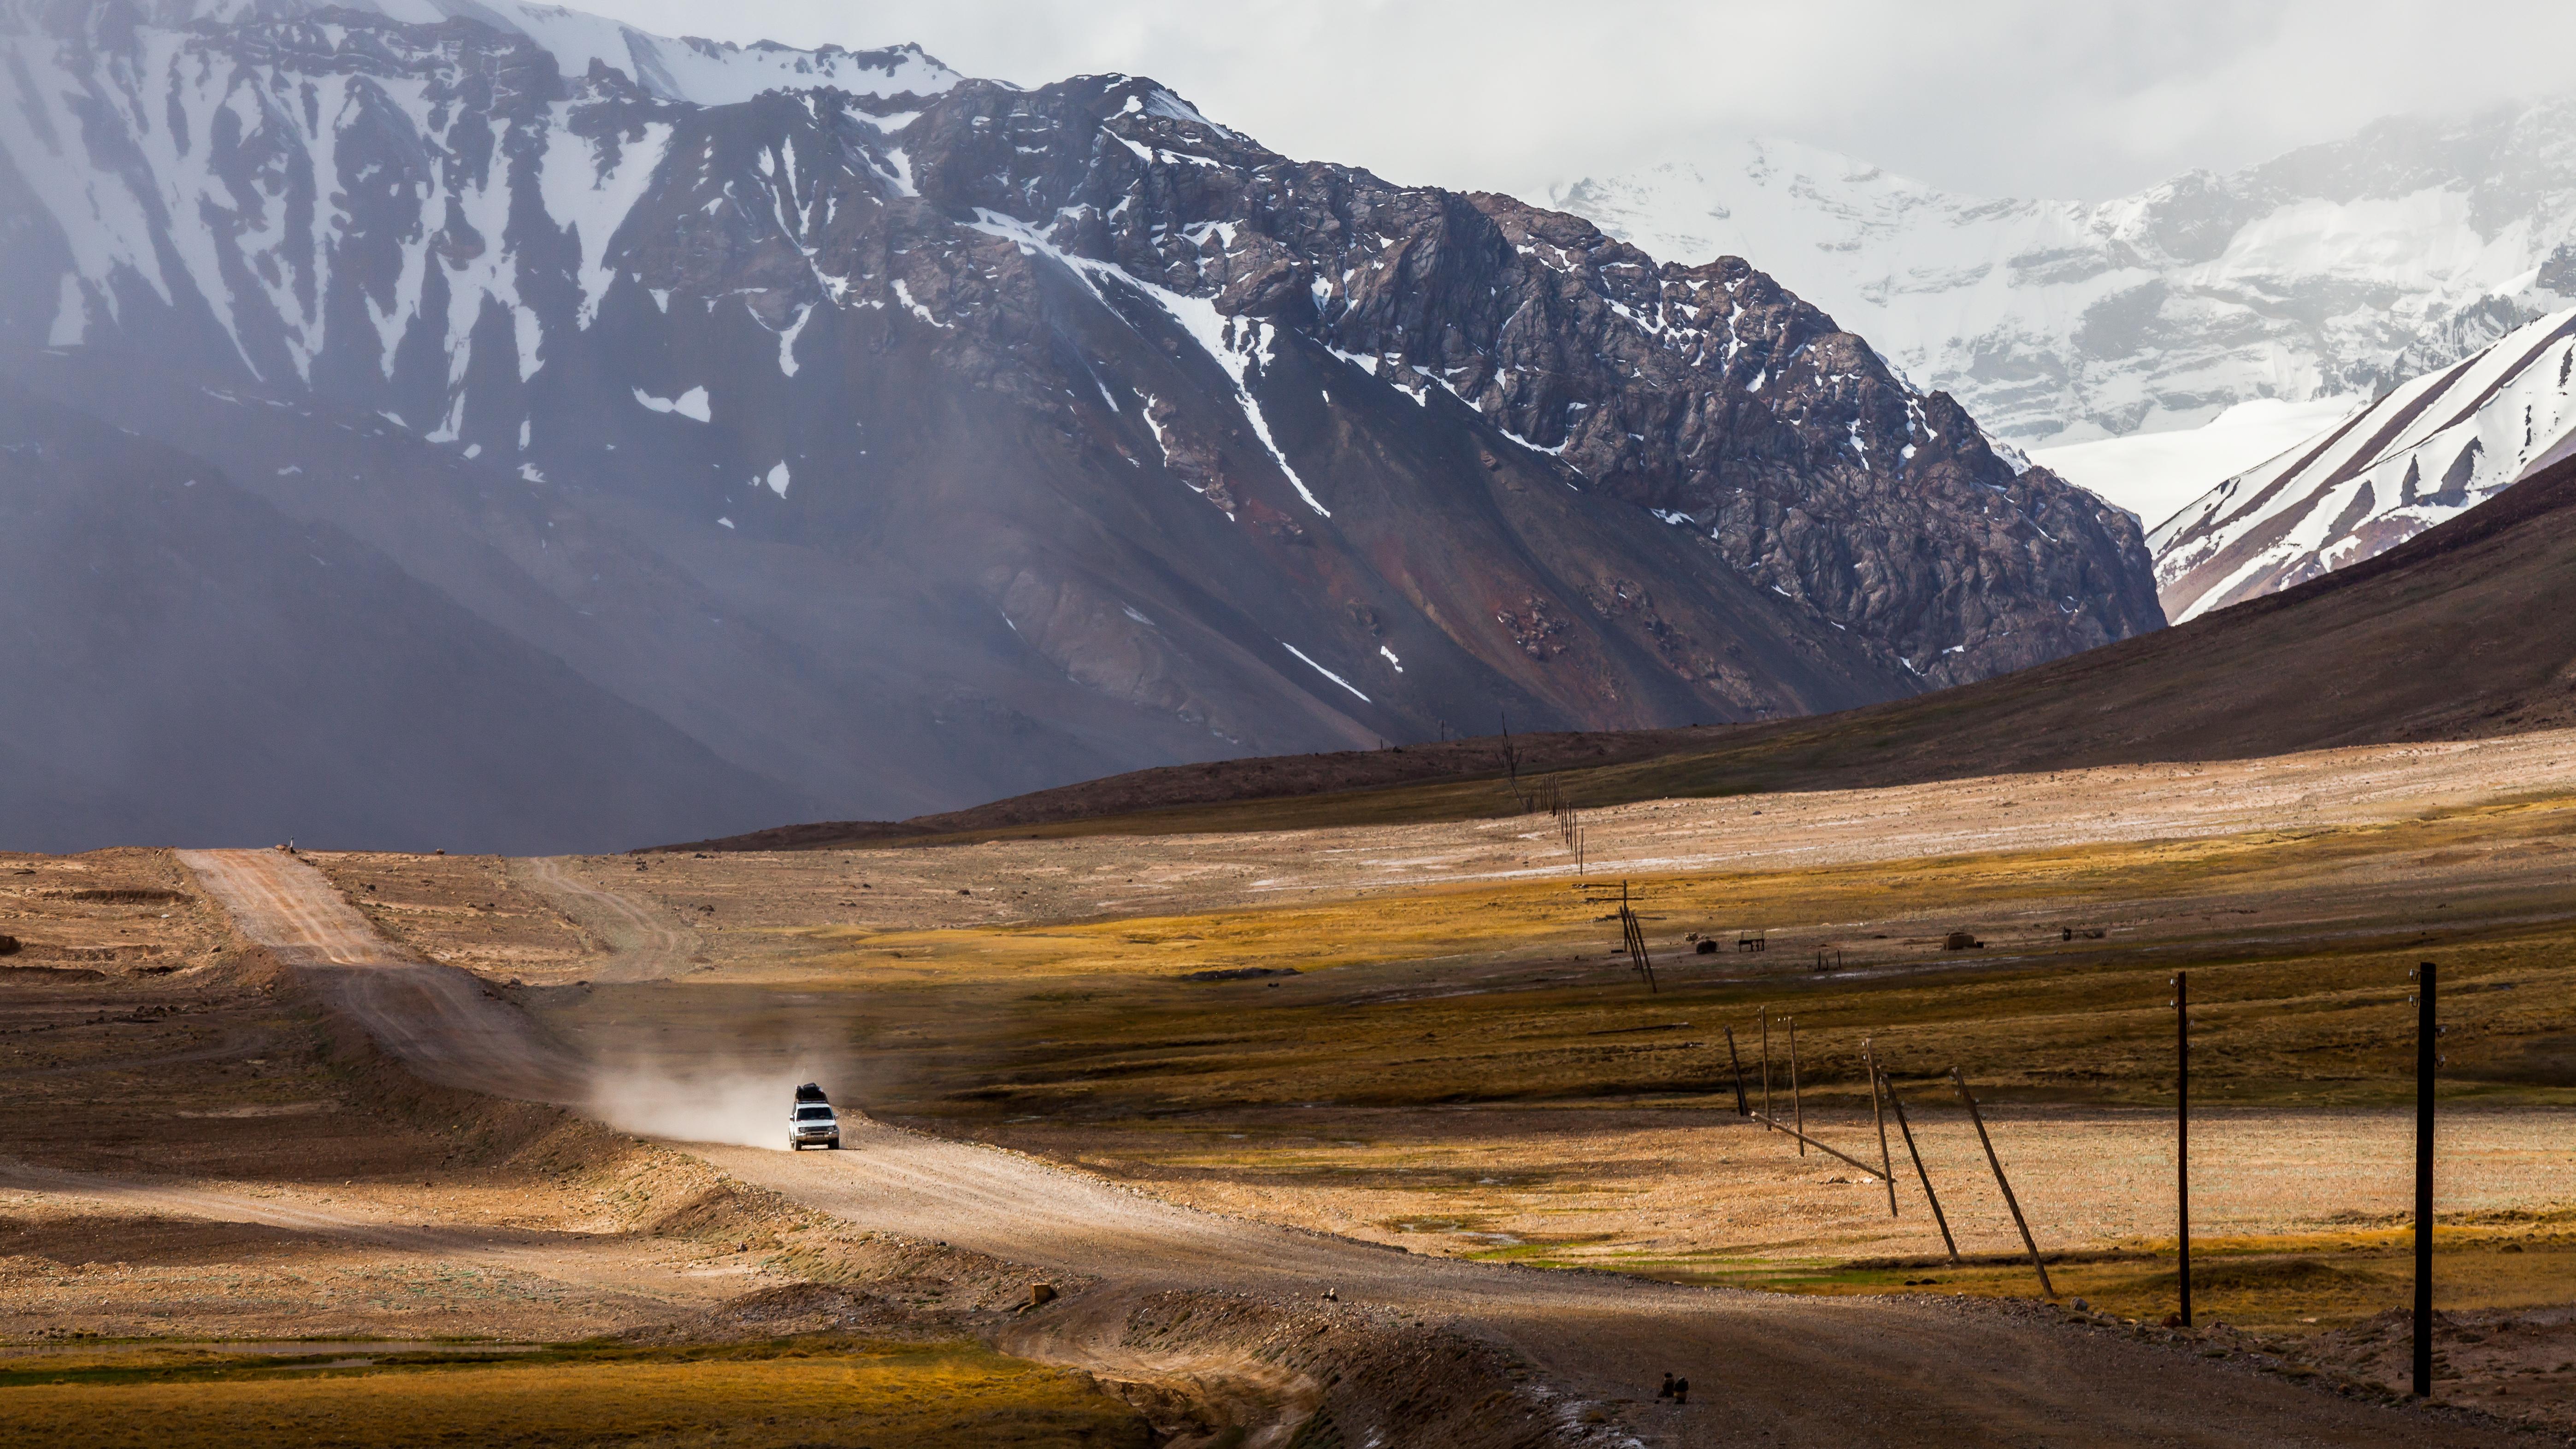 Car crossing the Pamir highway © NOWAK LUKASZ / Shutterstock